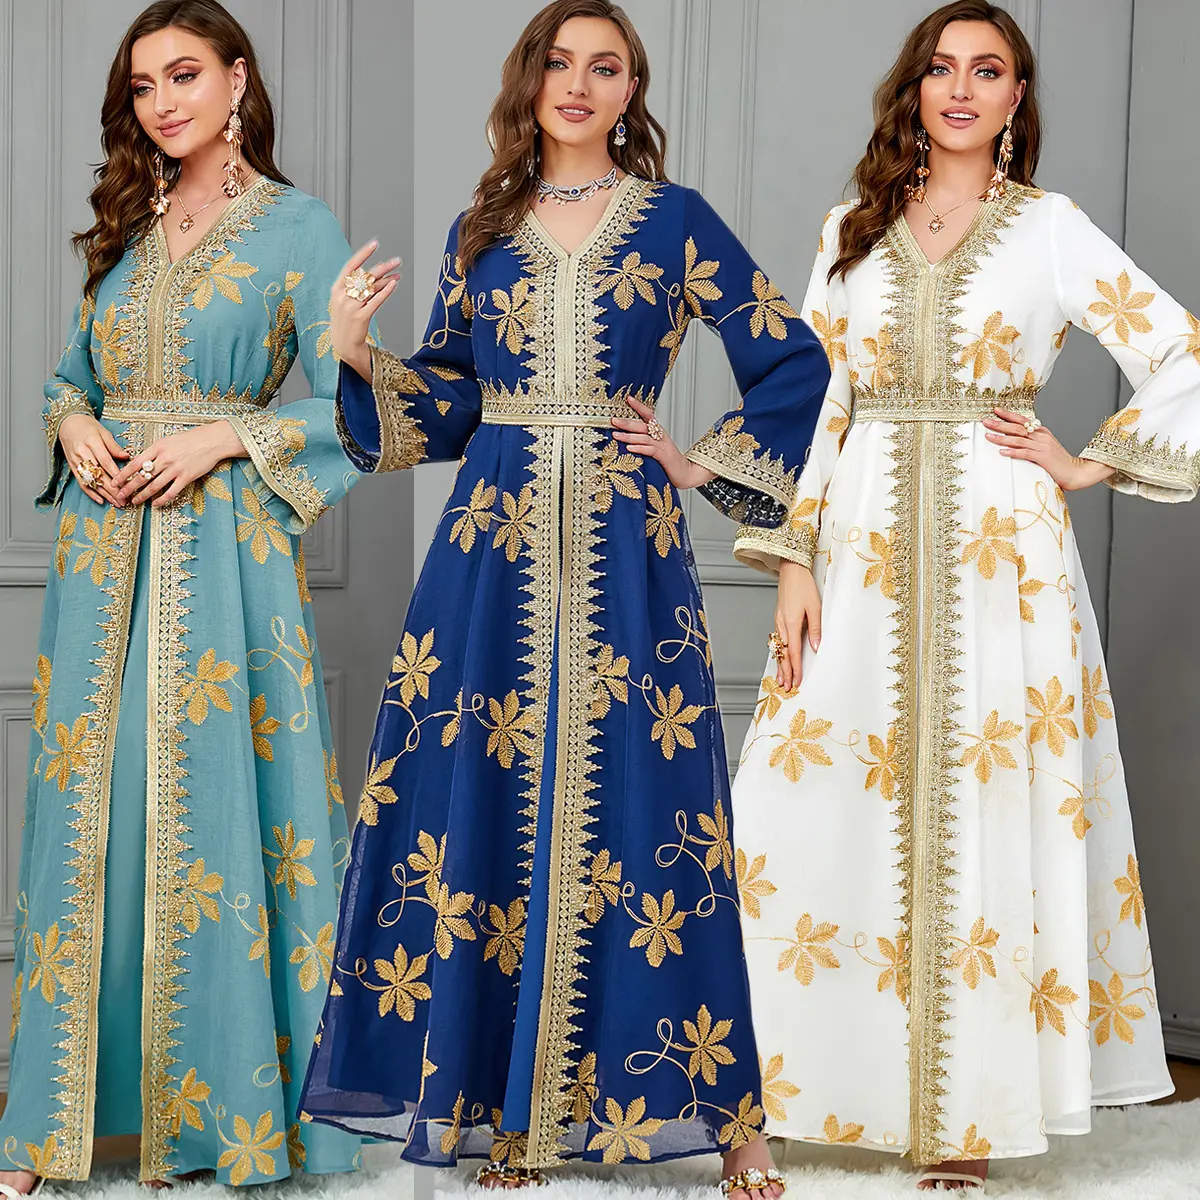 Eid באמצע המזרח ערבי מודפס מרוקקי שמלות ערב saudi saudi abaya המוסלמי שני חלקים של נשים מן הודו